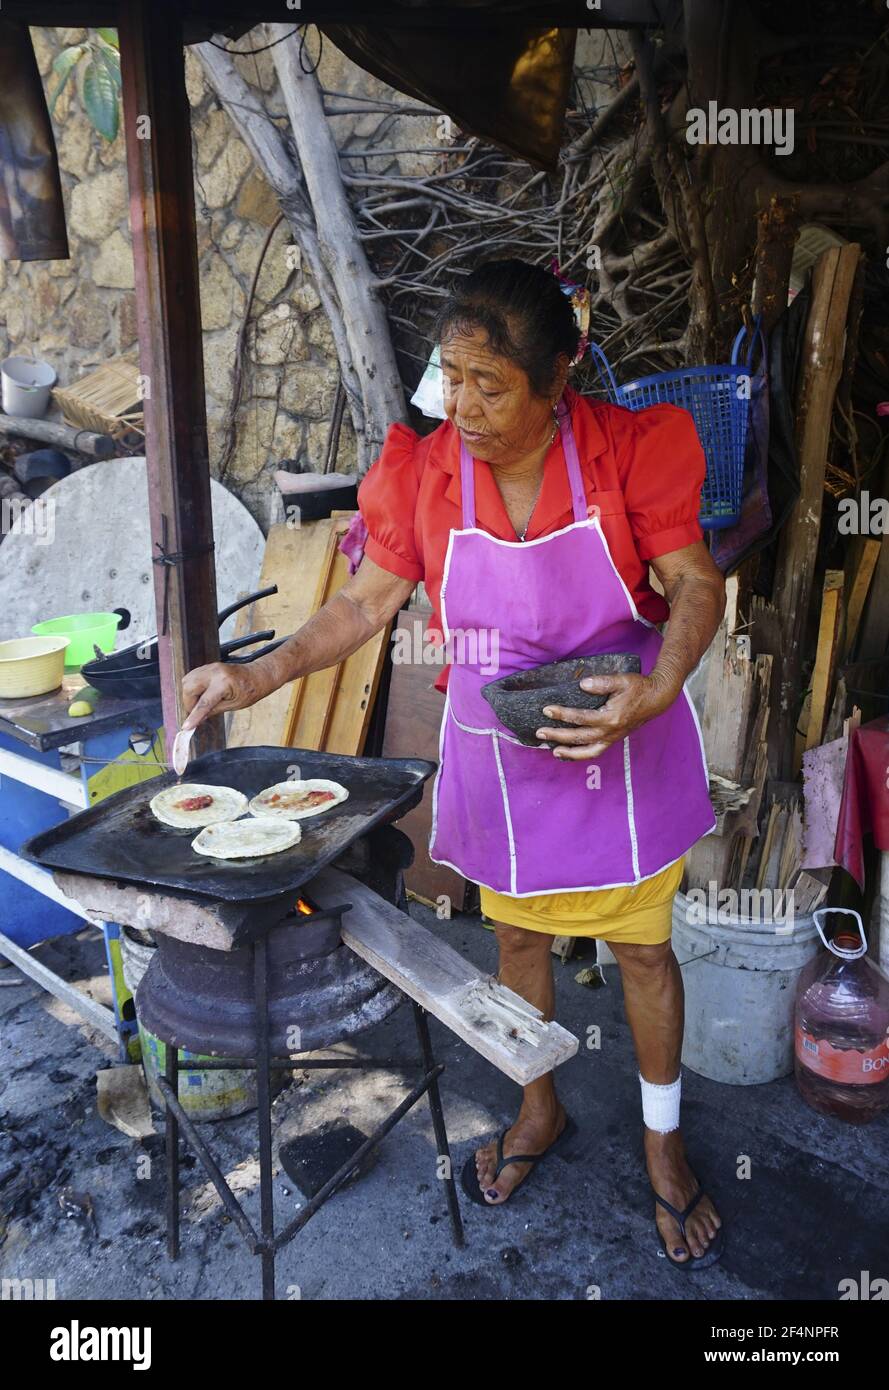 Vendeur de rue hispanique féminin faisant des sopes à Acapulco, Mexique. Banque D'Images